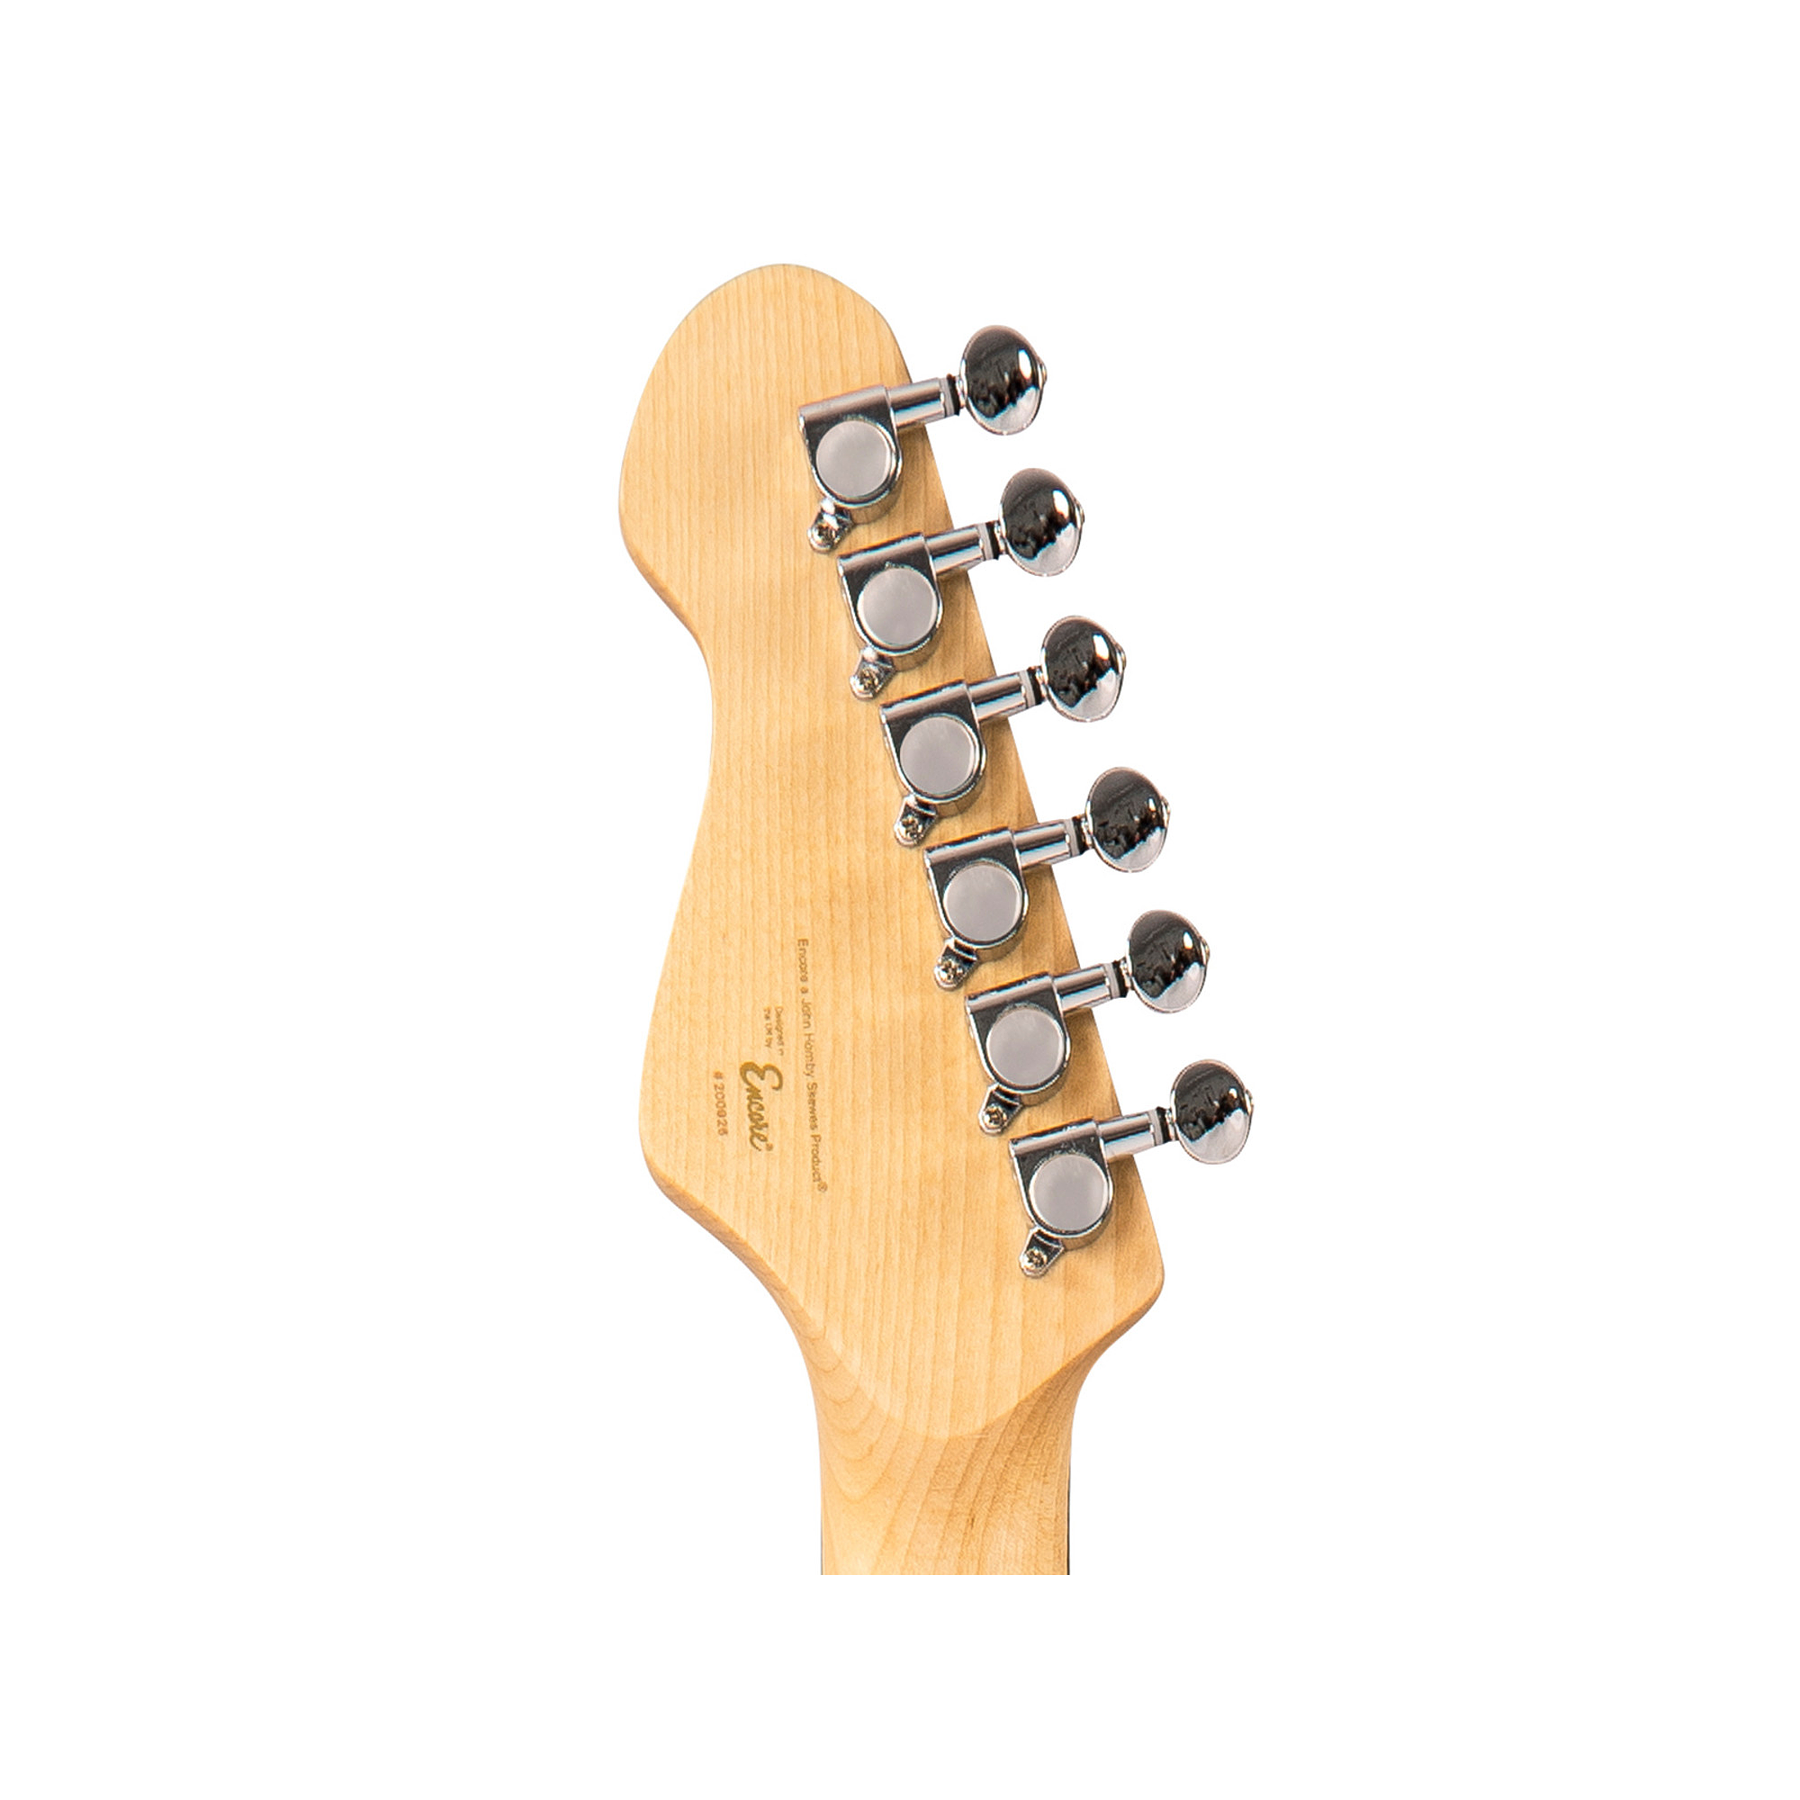 E6 Guitarra Eléctrica Stratocaster Sunburst Encore 